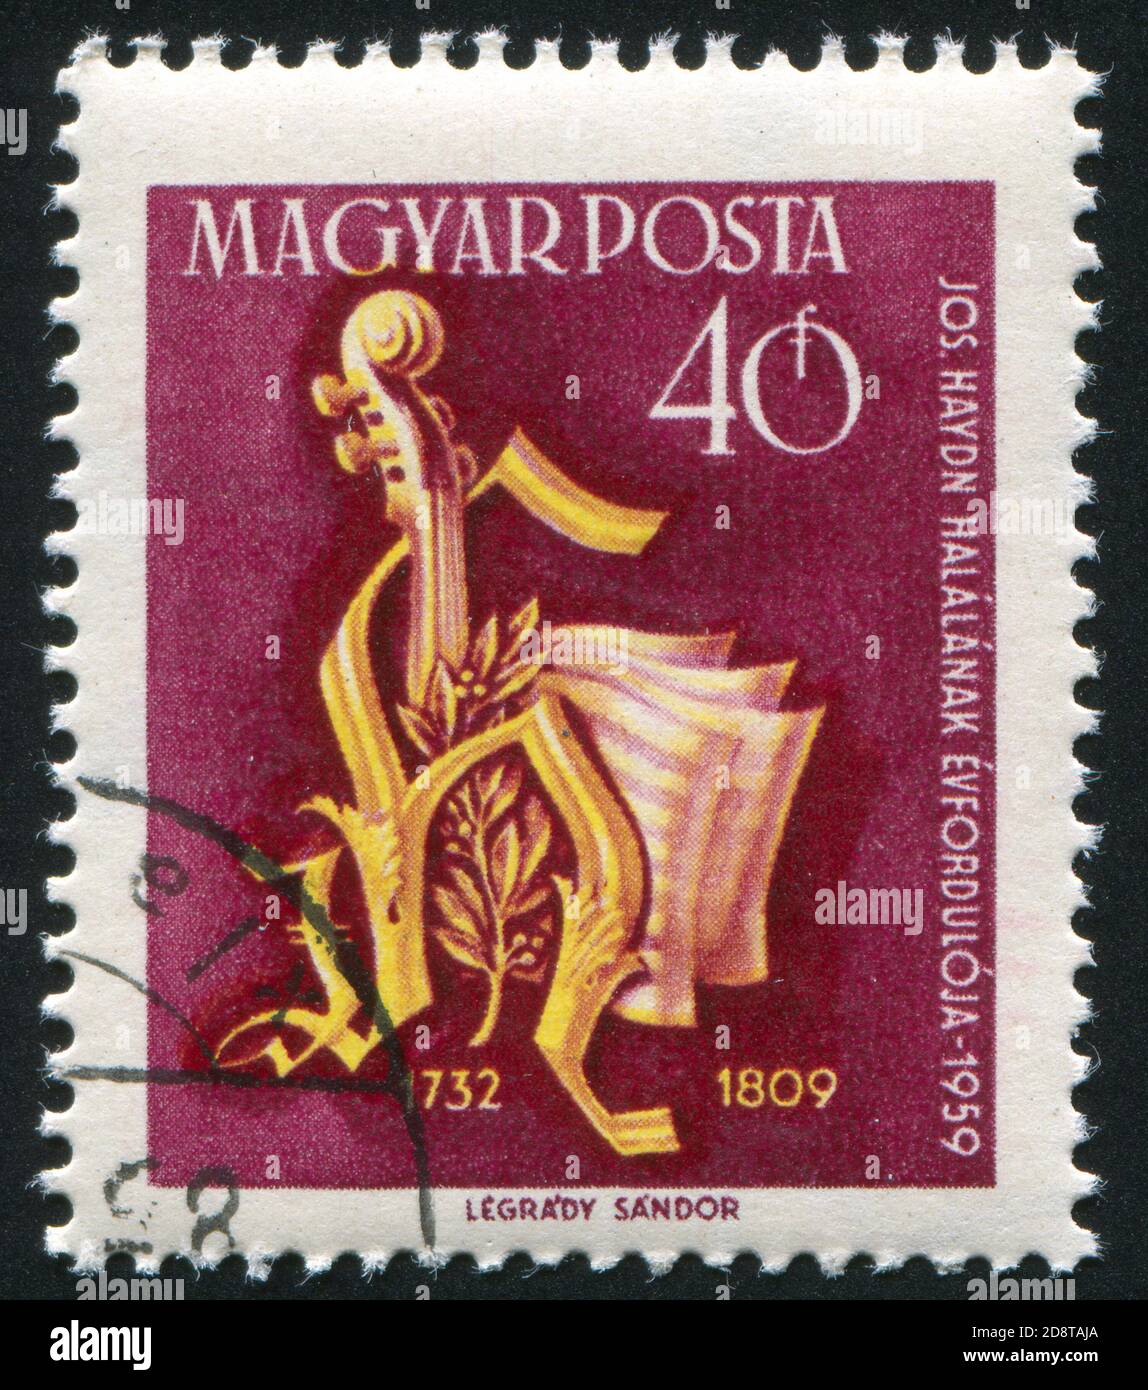 HONGRIE – VERS 1959: Timbre imprimé par la Hongrie, montre le monogramme de Haydn, vers 1959 Banque D'Images